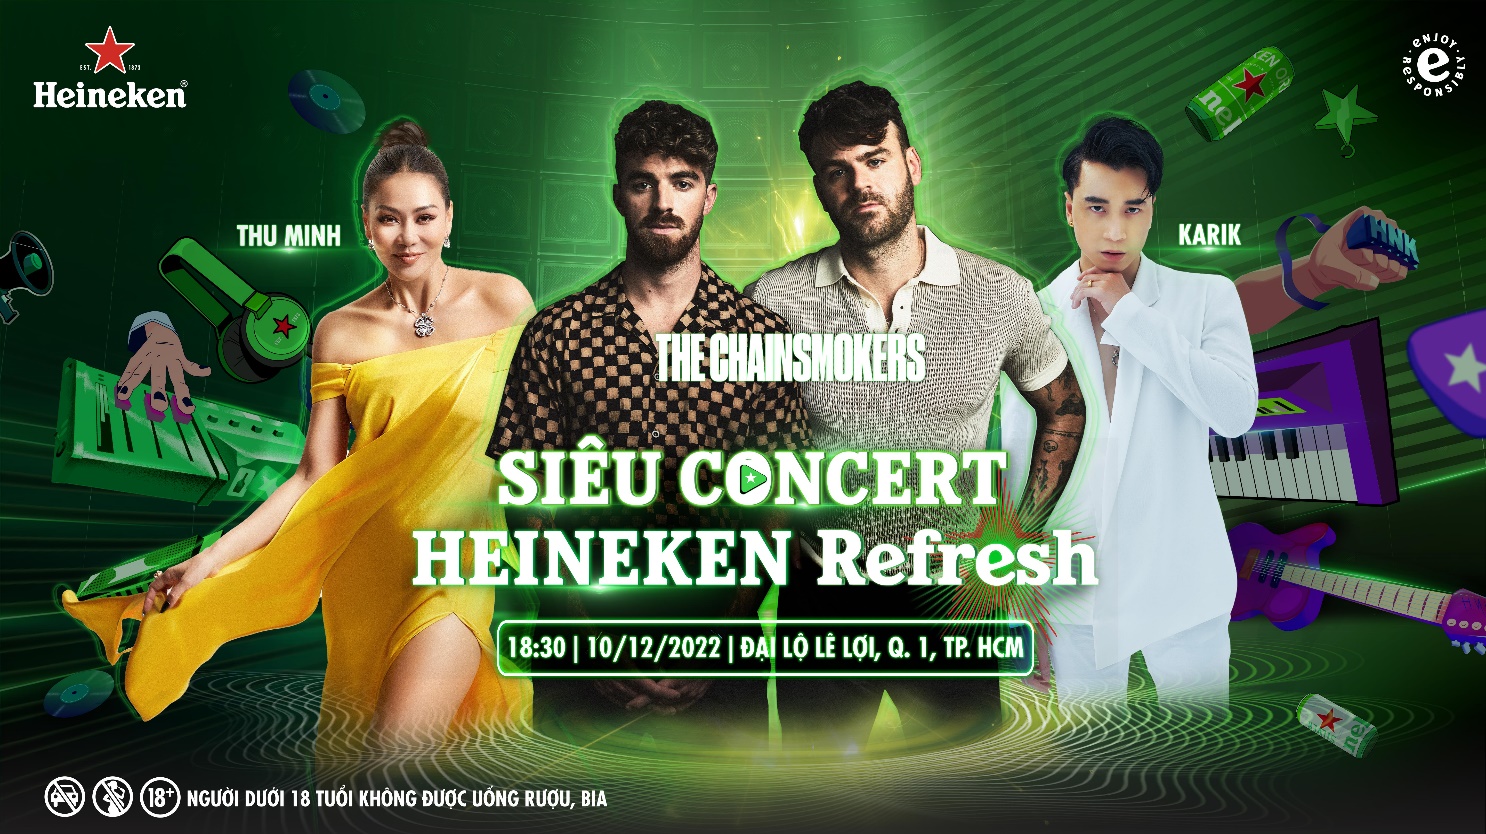 Thu Minh - Karik trước thềm Heineken Refresh: Trình diễn cùng The Chainsmokers là cơ hội có một không hai - Ảnh 5.